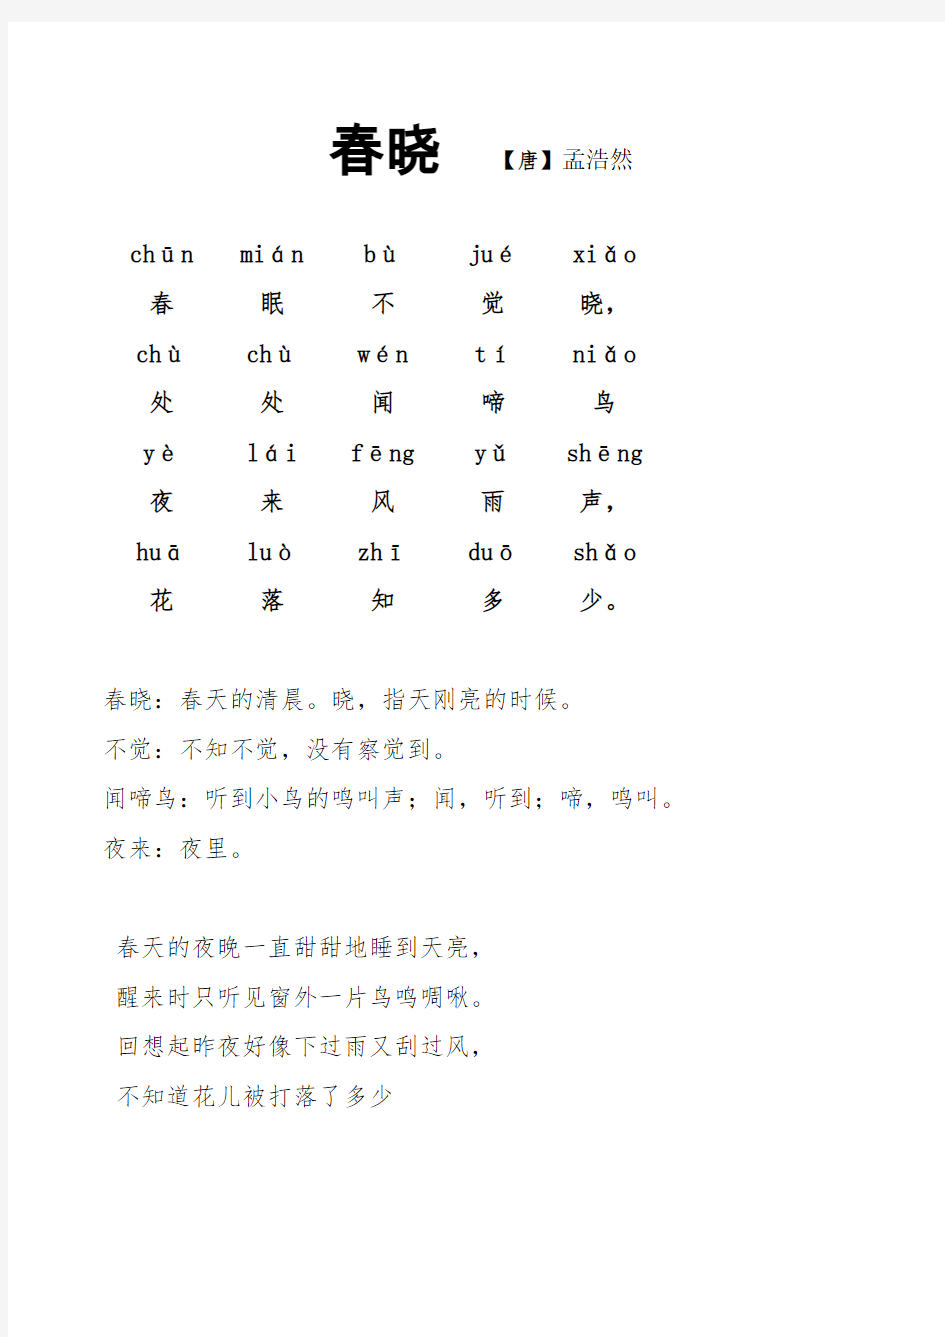 必背古诗首带拼音和译文整理好可直接打印